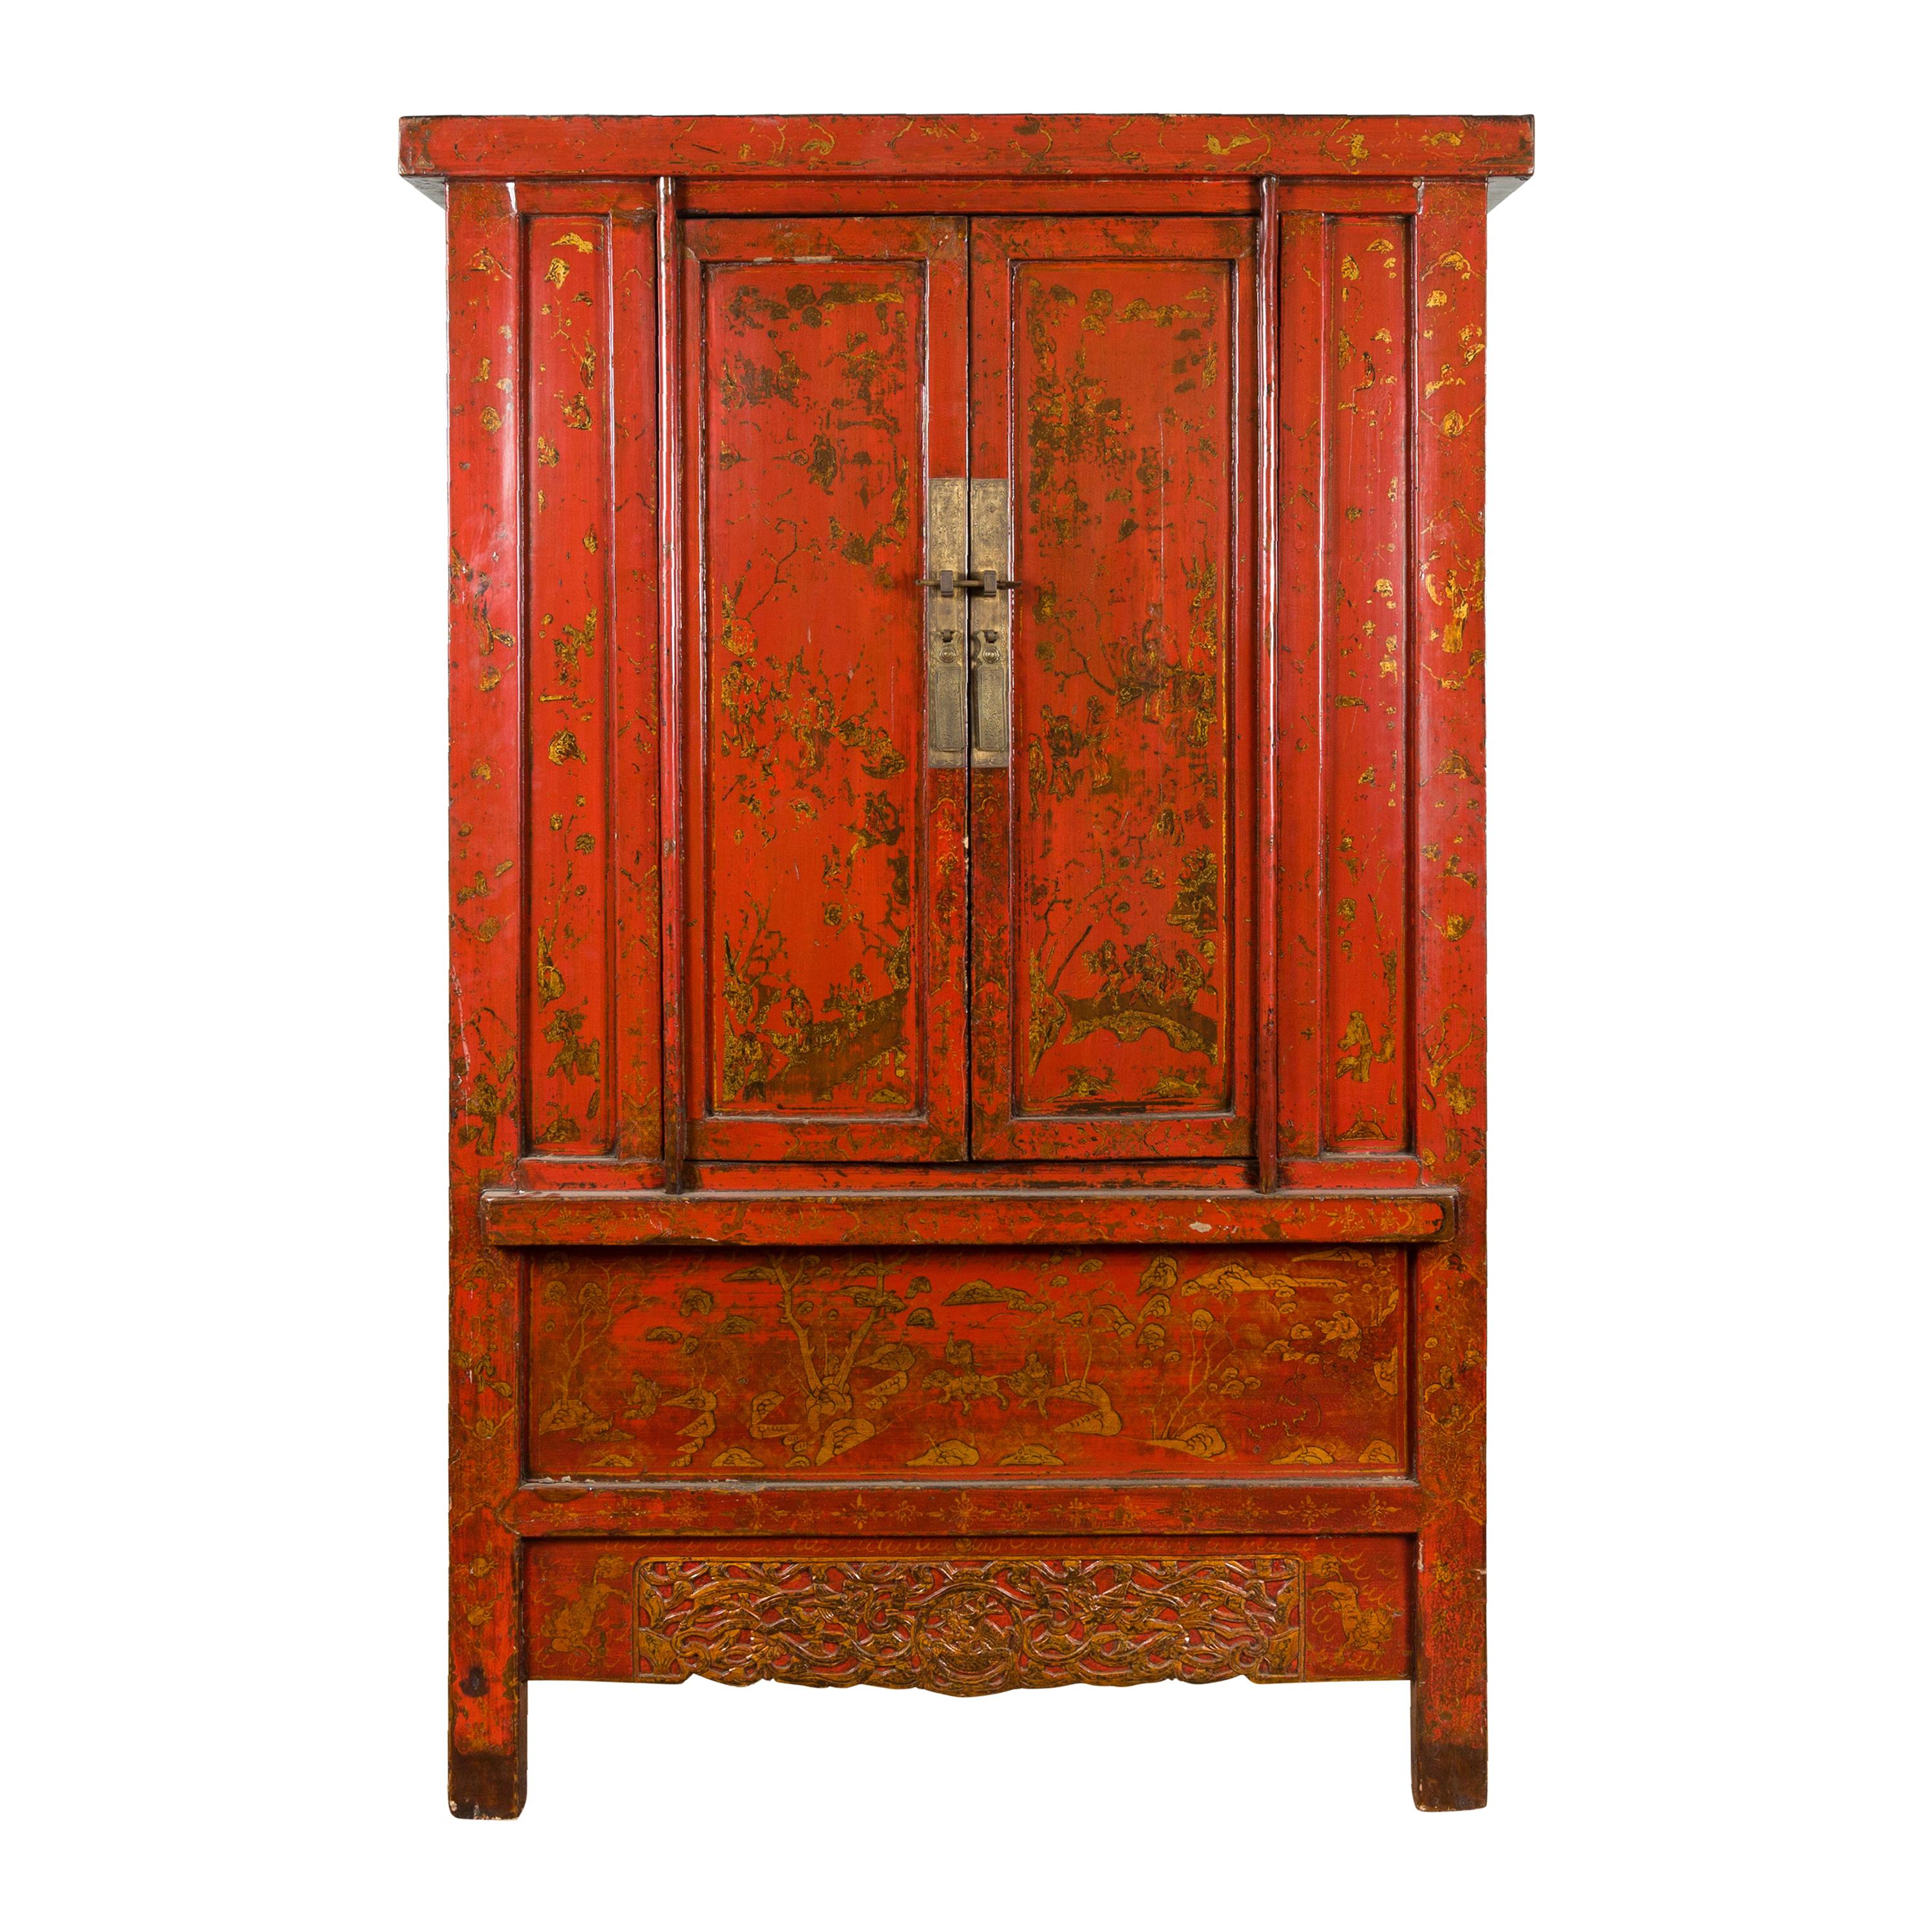 Chinesischer rot lackierter Schrank aus der chinesischen Qing-Dynastie mit vergoldetem Chinoiserie-Dekor